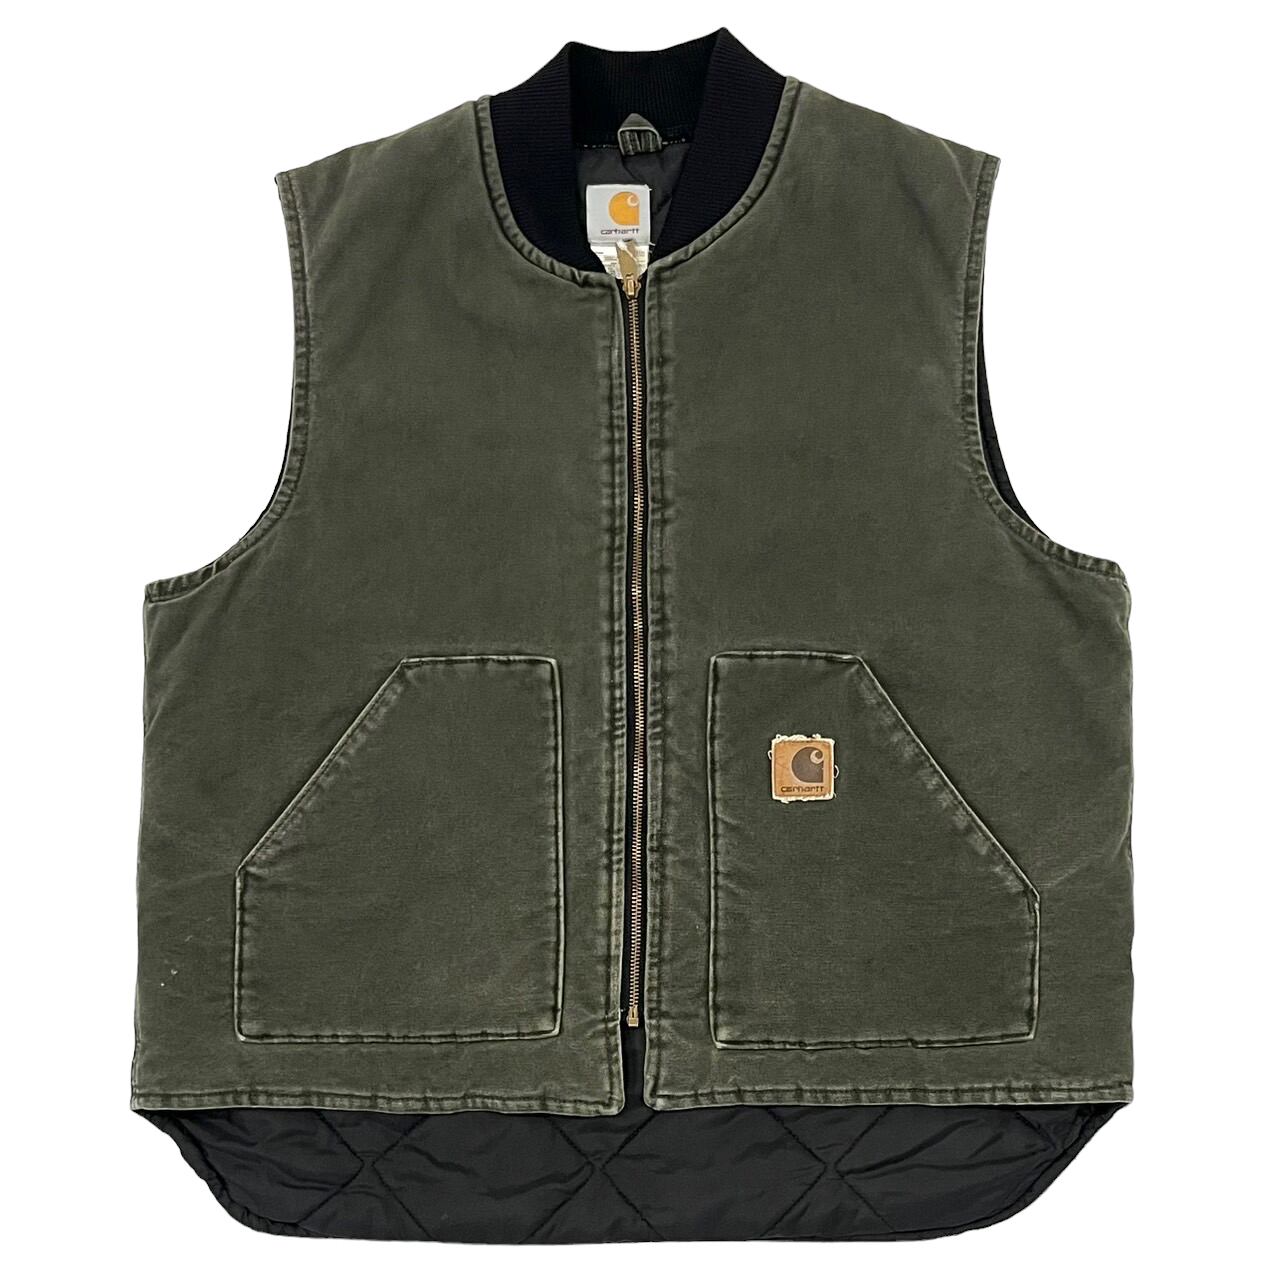 90's Carhartt vest